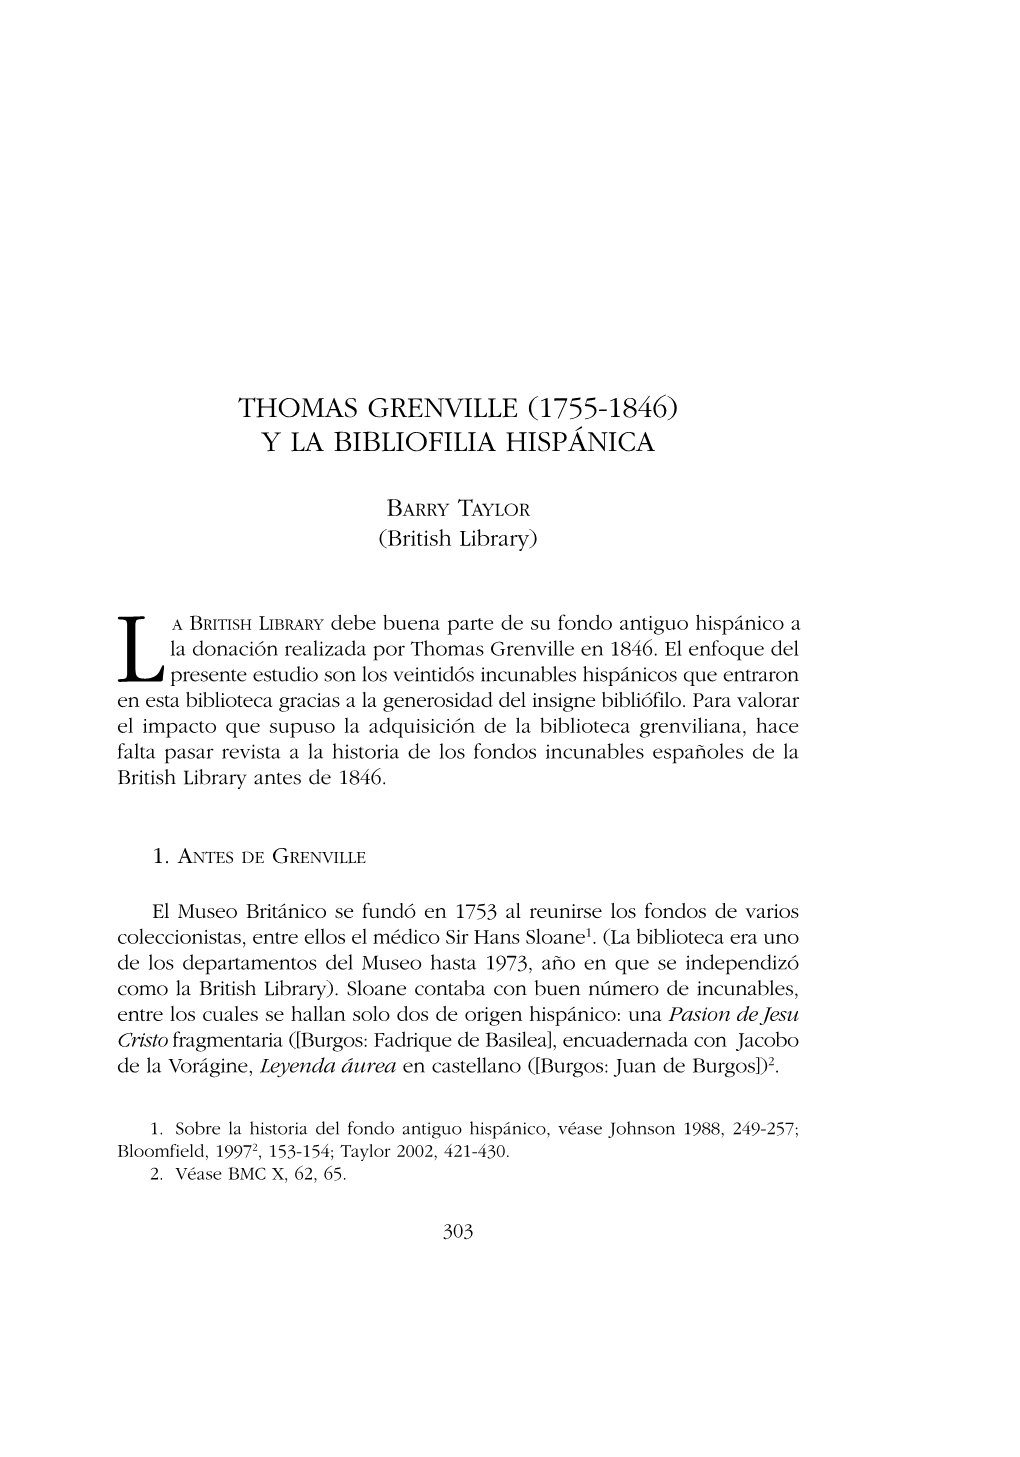 Thomas Grenville (1755-1846) Y La Bibliofilia Hispánica